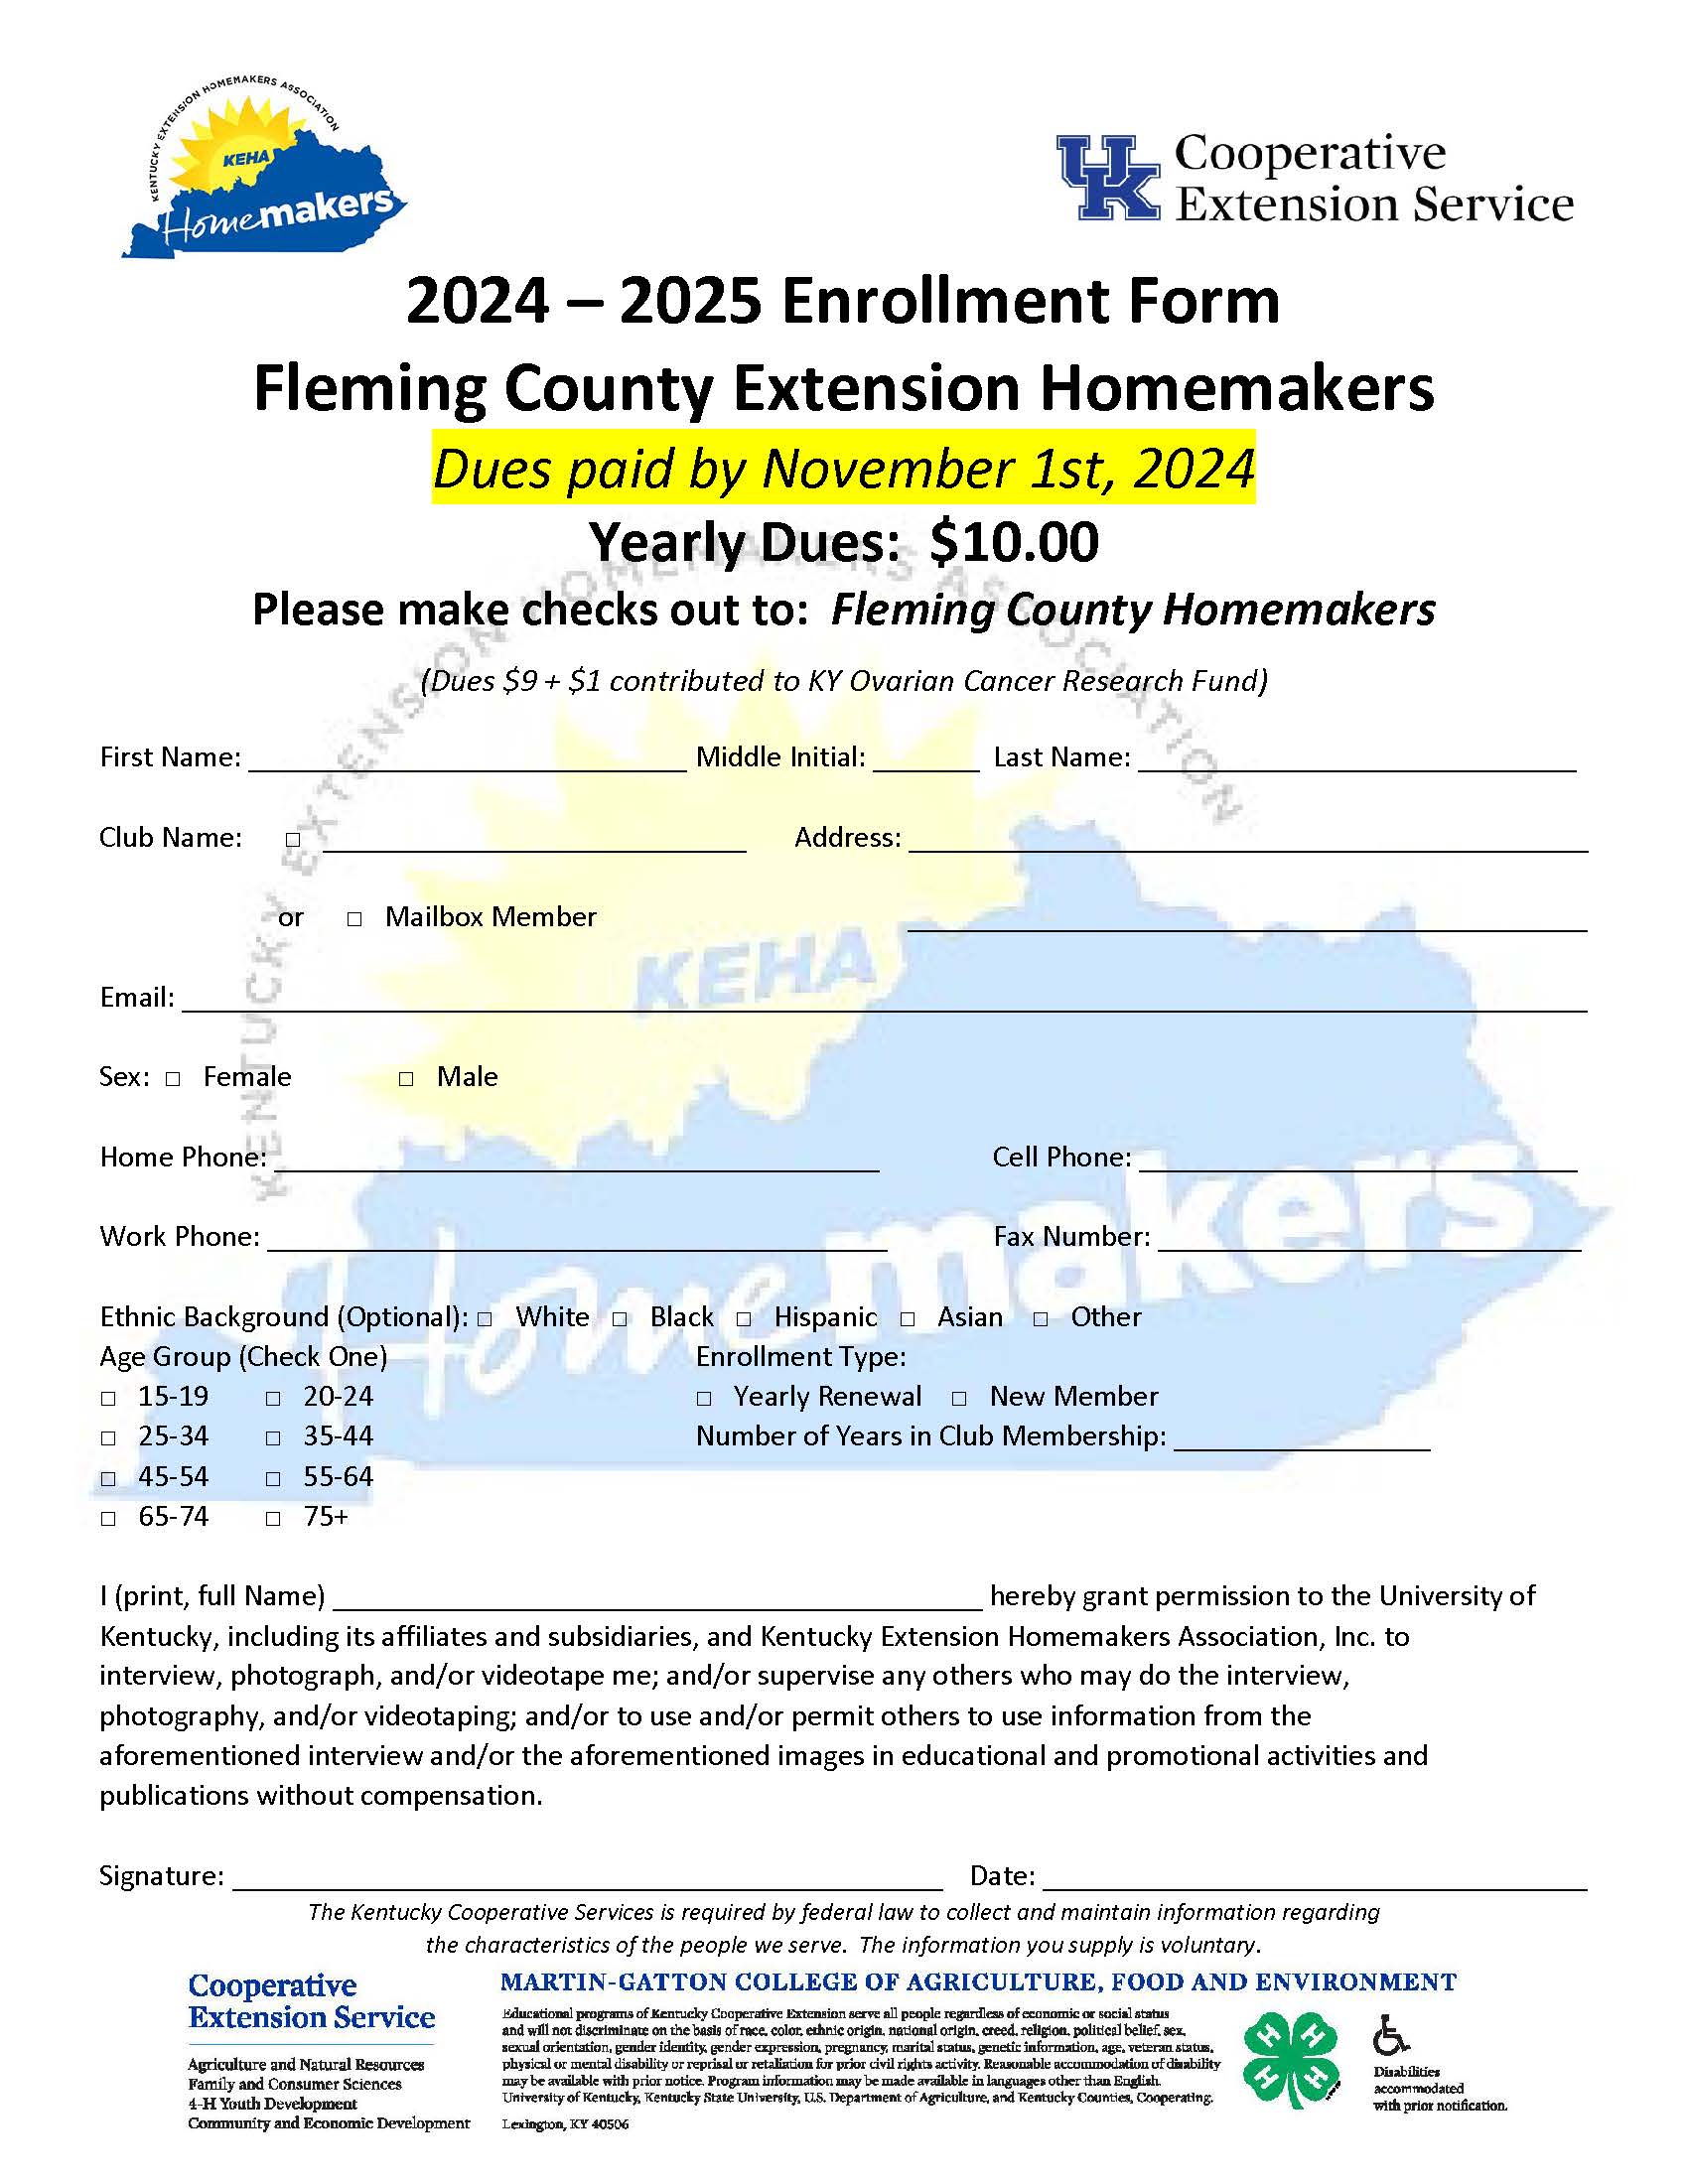 2024-2025 Homemaker Enrollment Form